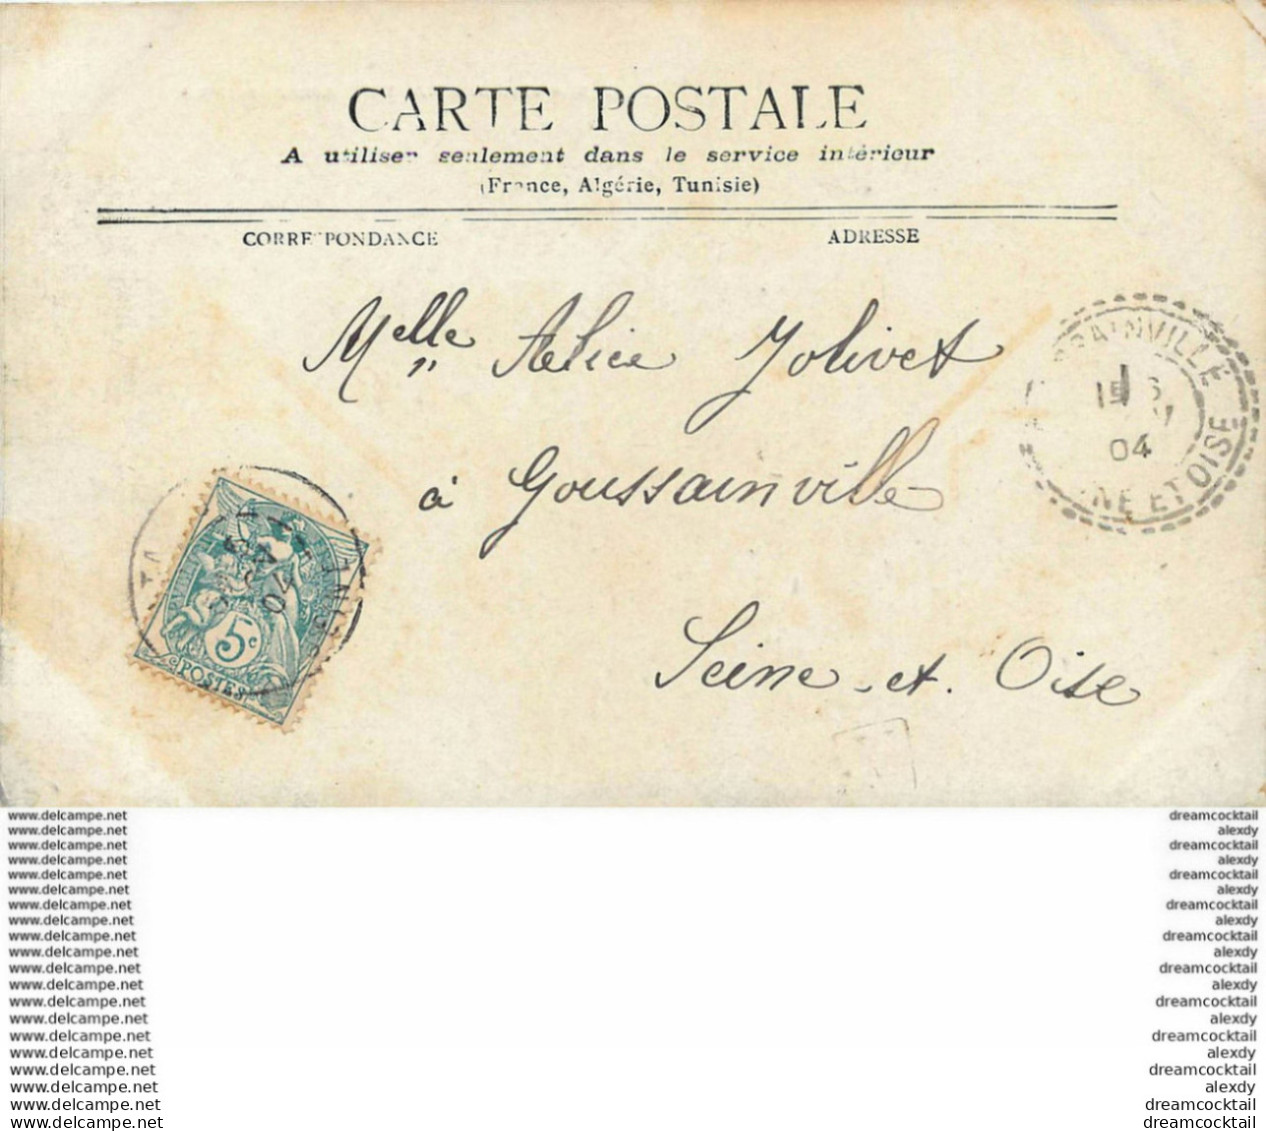 PARIS Lot 10 Cpa. Canal St-Martin Saint-Cloud Tour Eiffel Invalides Archives Nationales Pont et Trinité